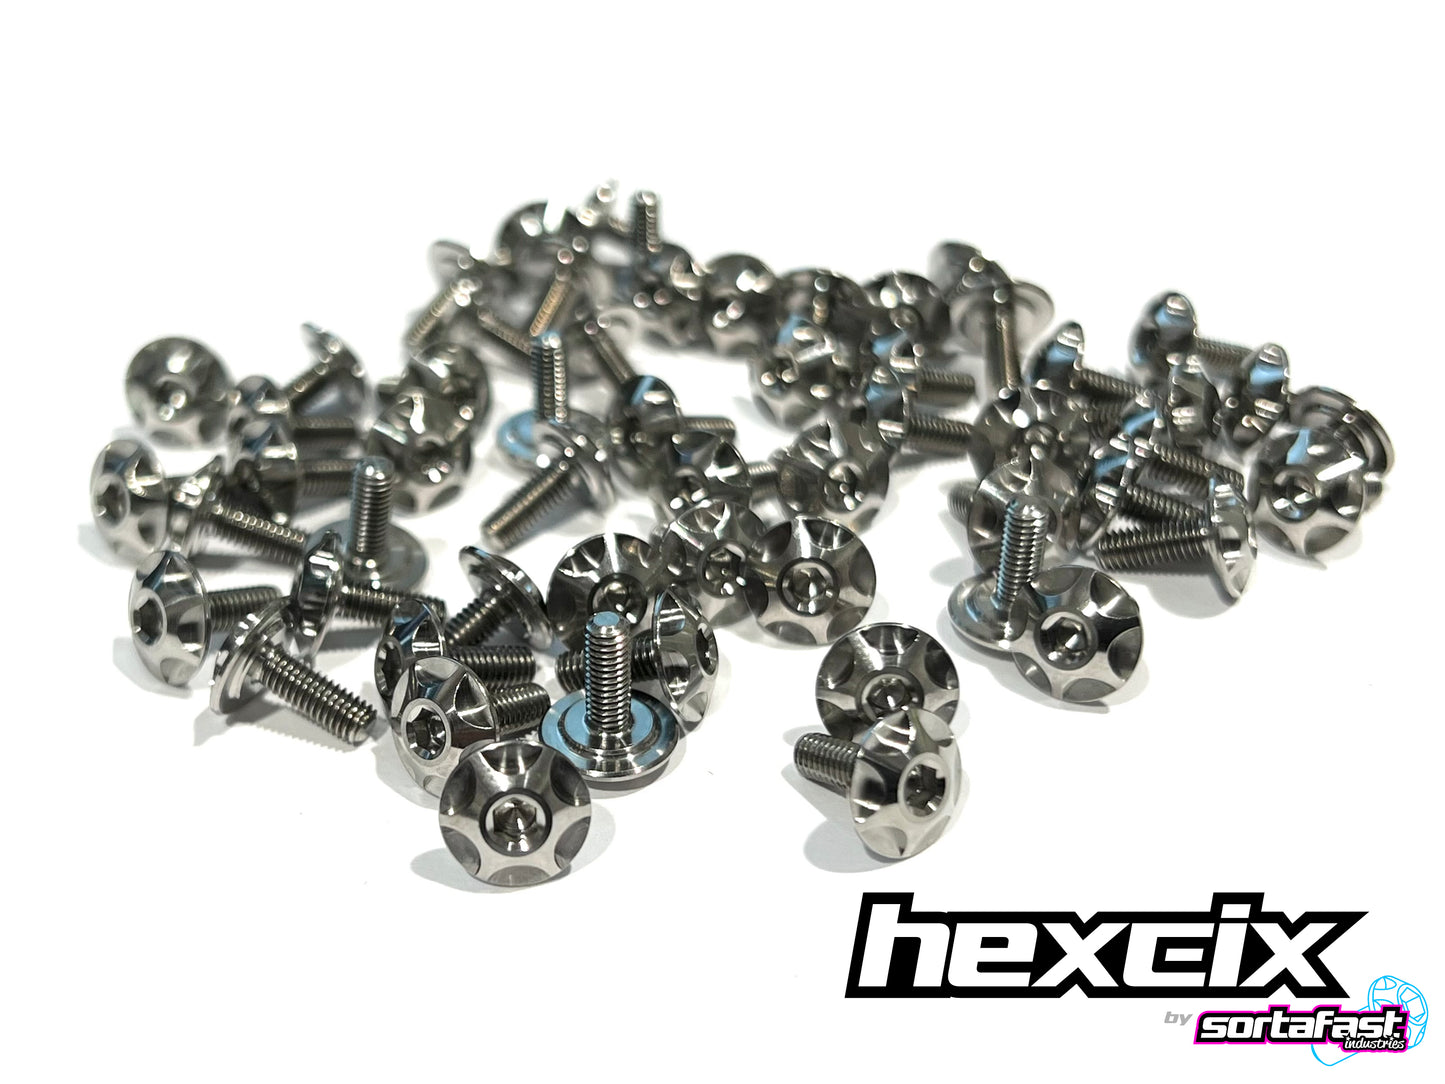 Sortafast Hexcix Titanium Screws - Clutch Screw - 1pc (Metric)